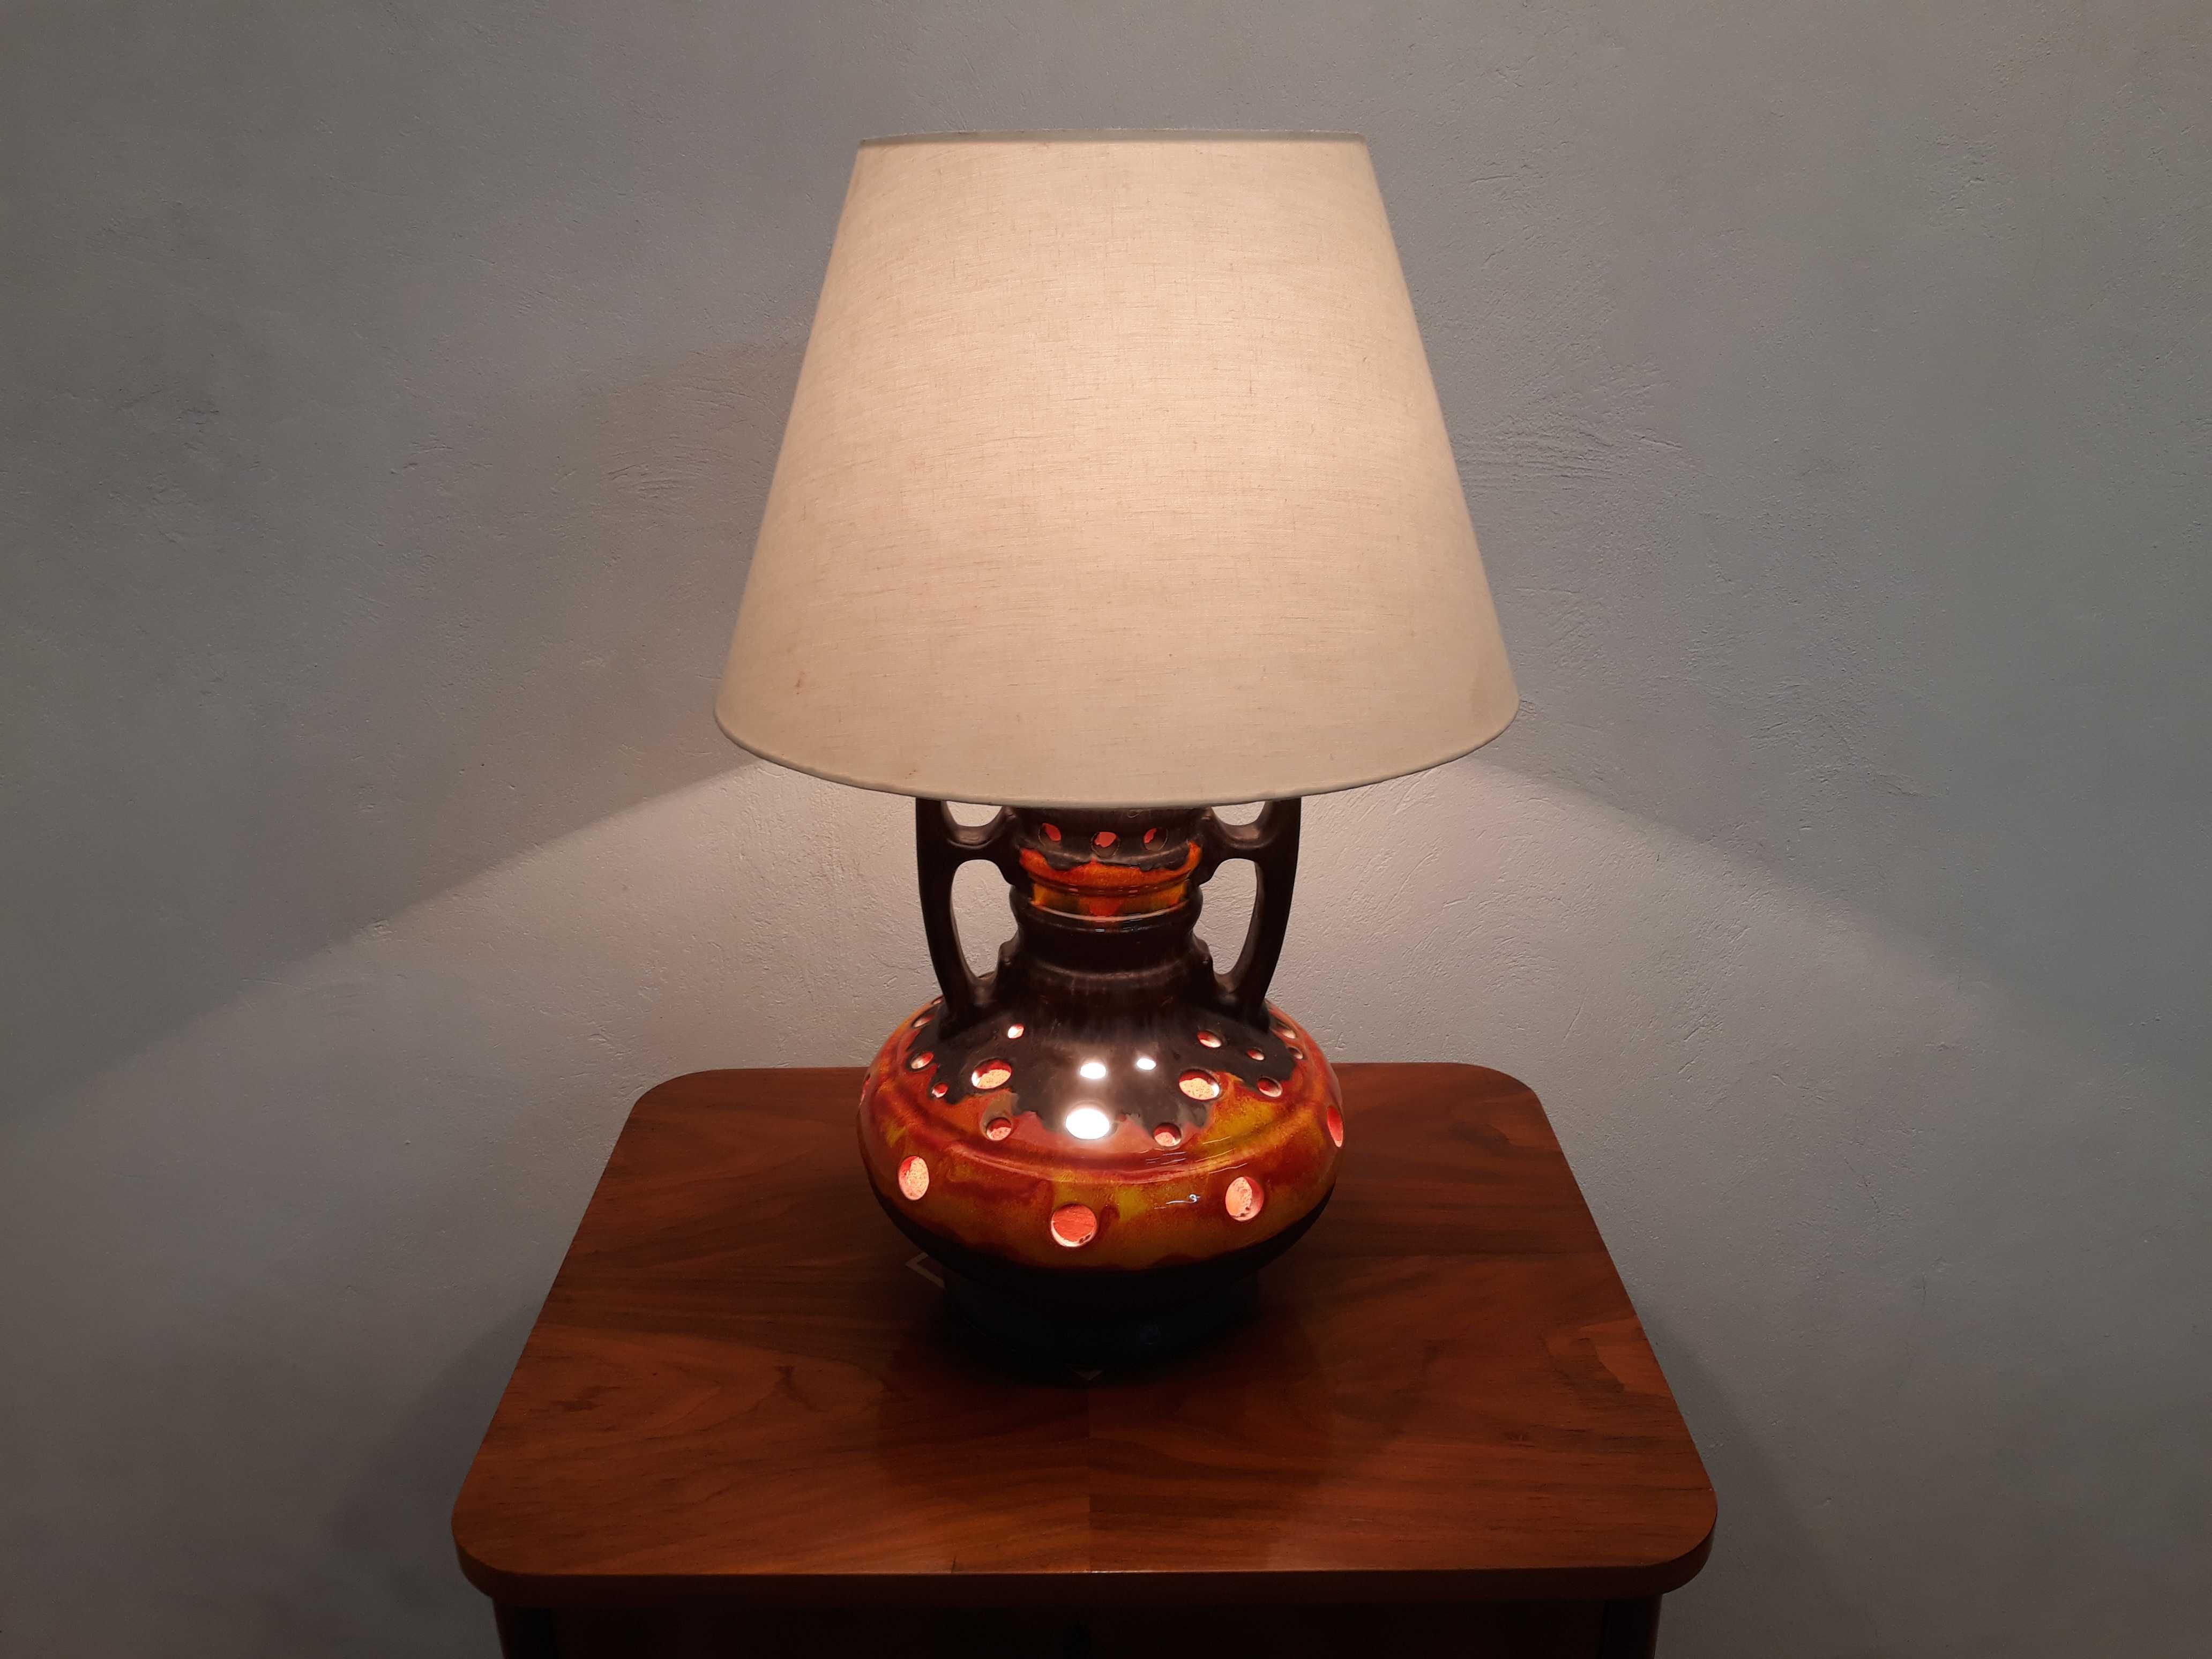 Lampa stołowa ceramiczna lawa z abażurem ażurowa 2 źródła światła